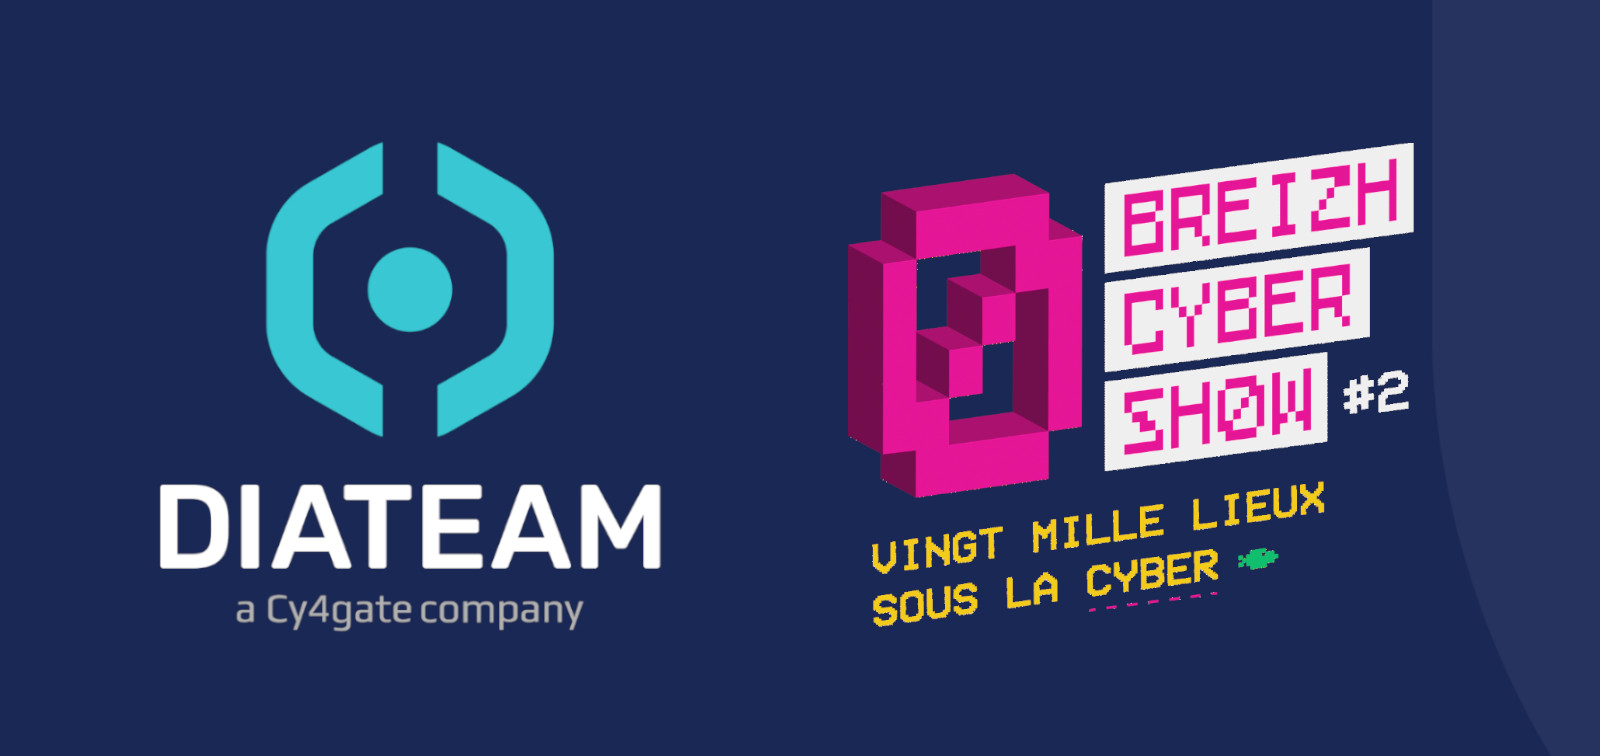 DIATEAM au Breizh Cyber Show à Brest le 5 octobre